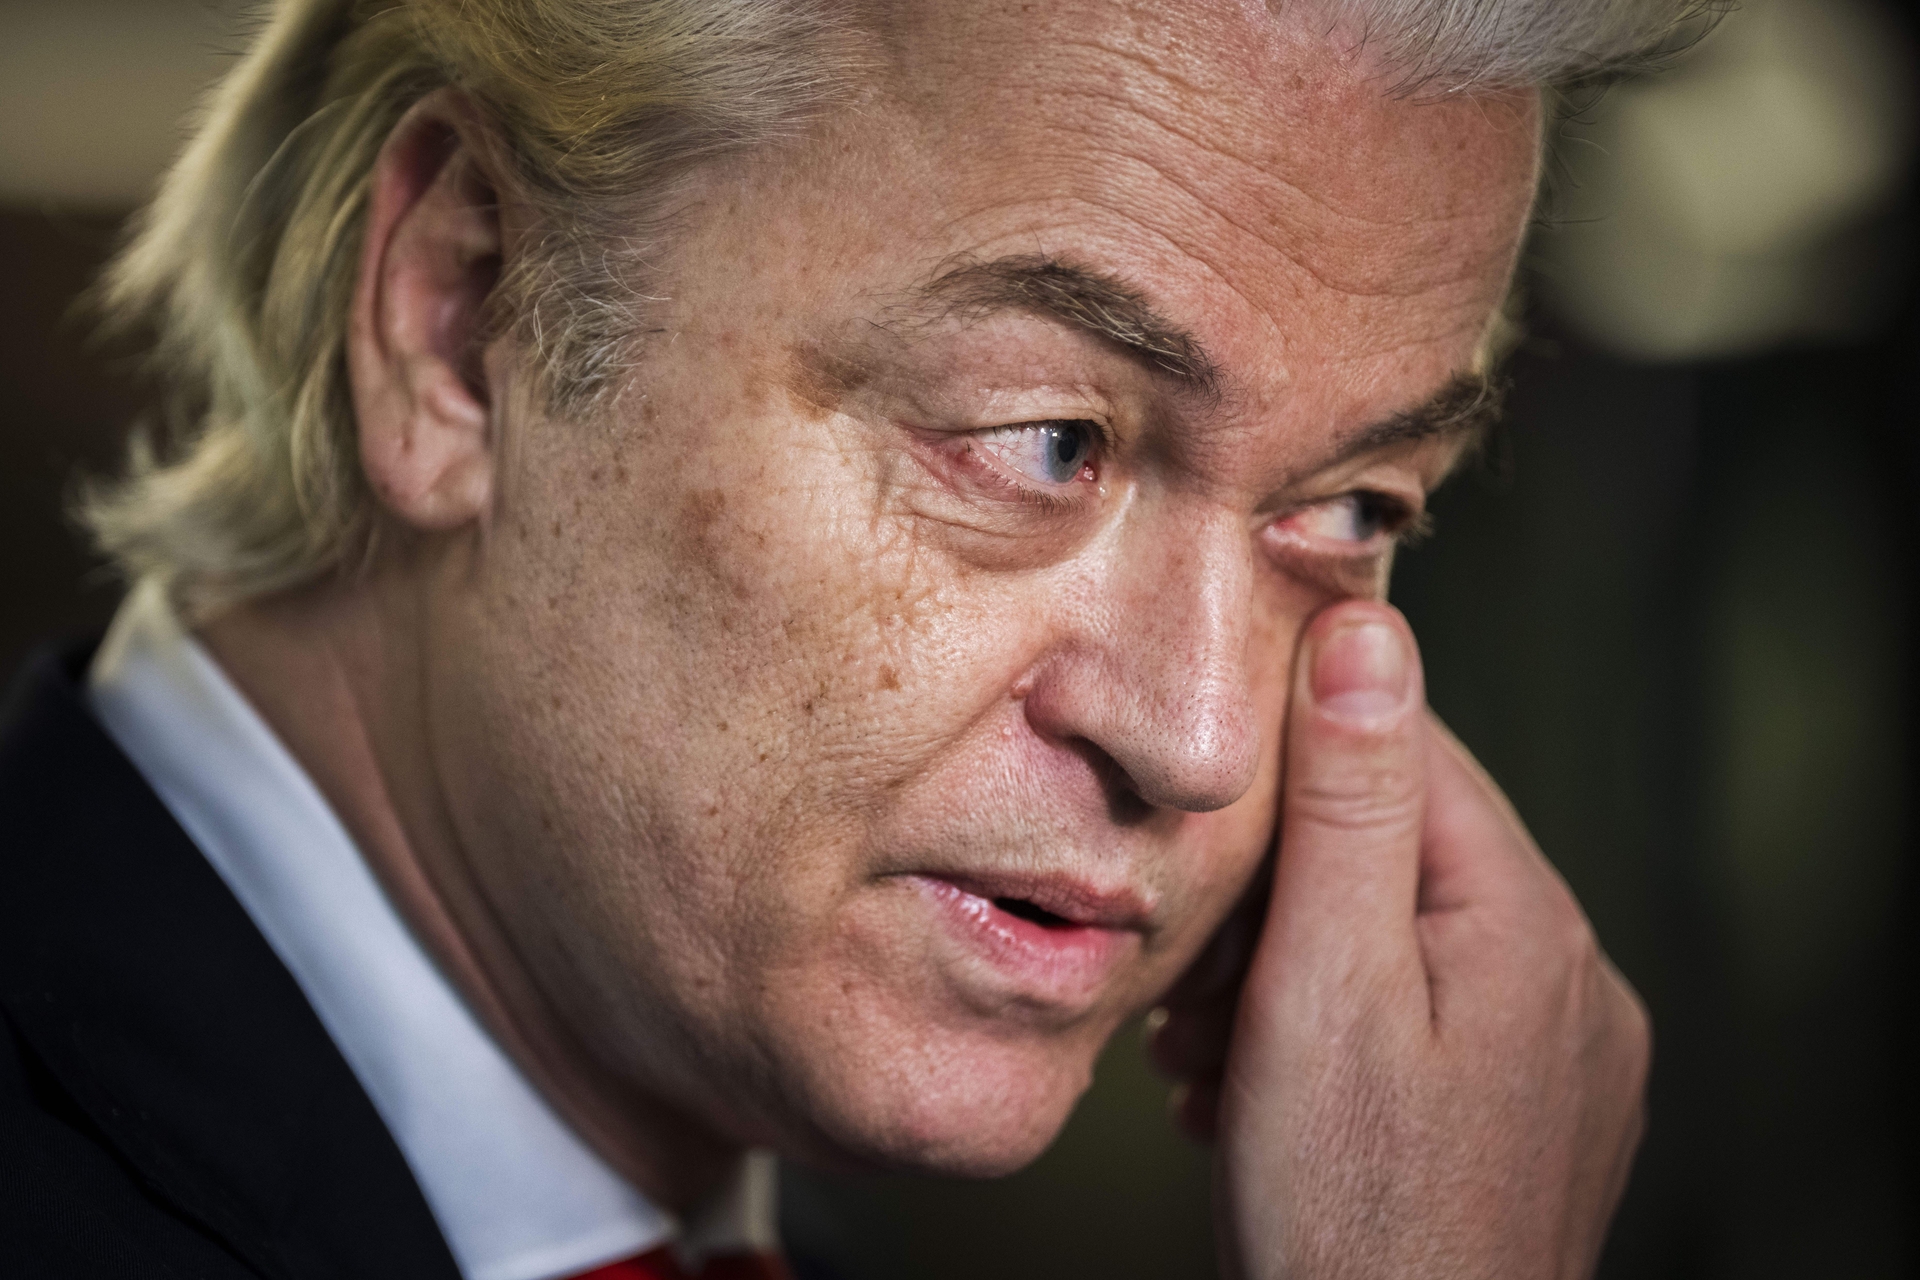 Afbeelding van Crisisoverleg coalitiepartijen om puinhoop die Wilders van ministersposten maakt